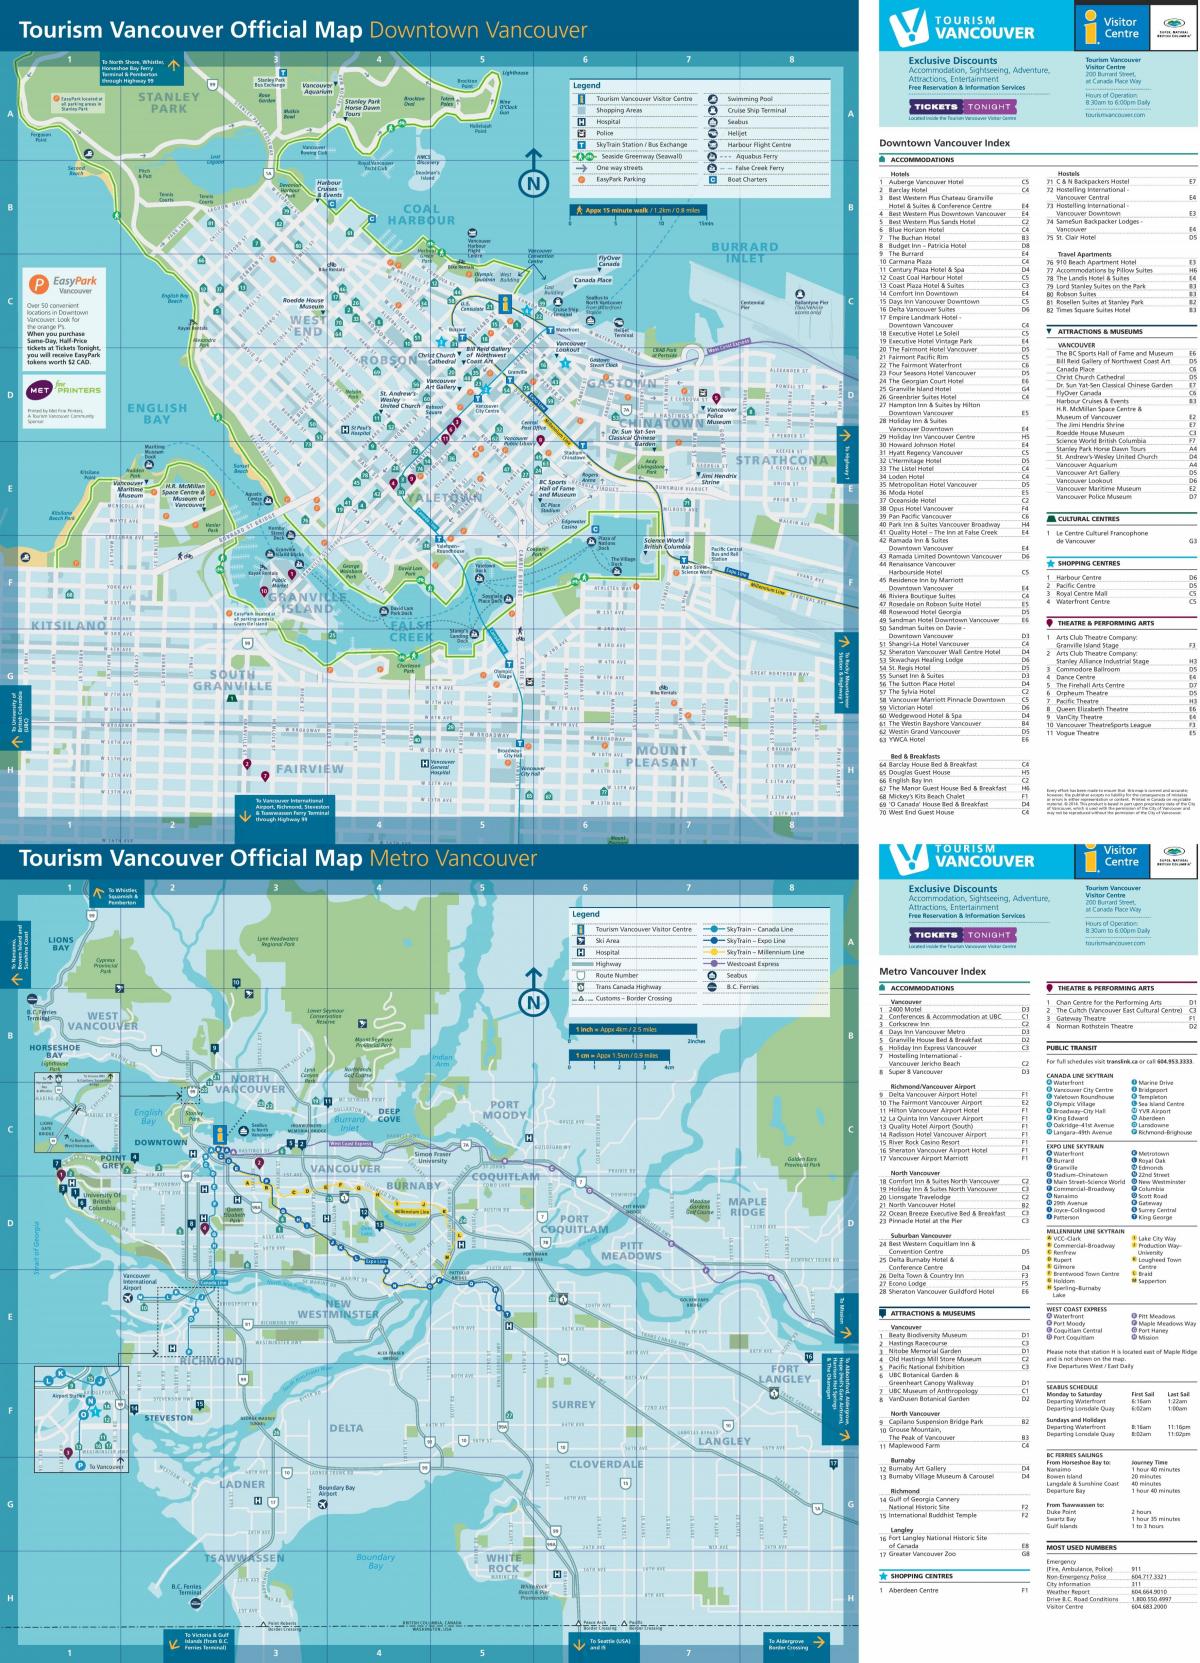 Plan de la ville de Vancouver